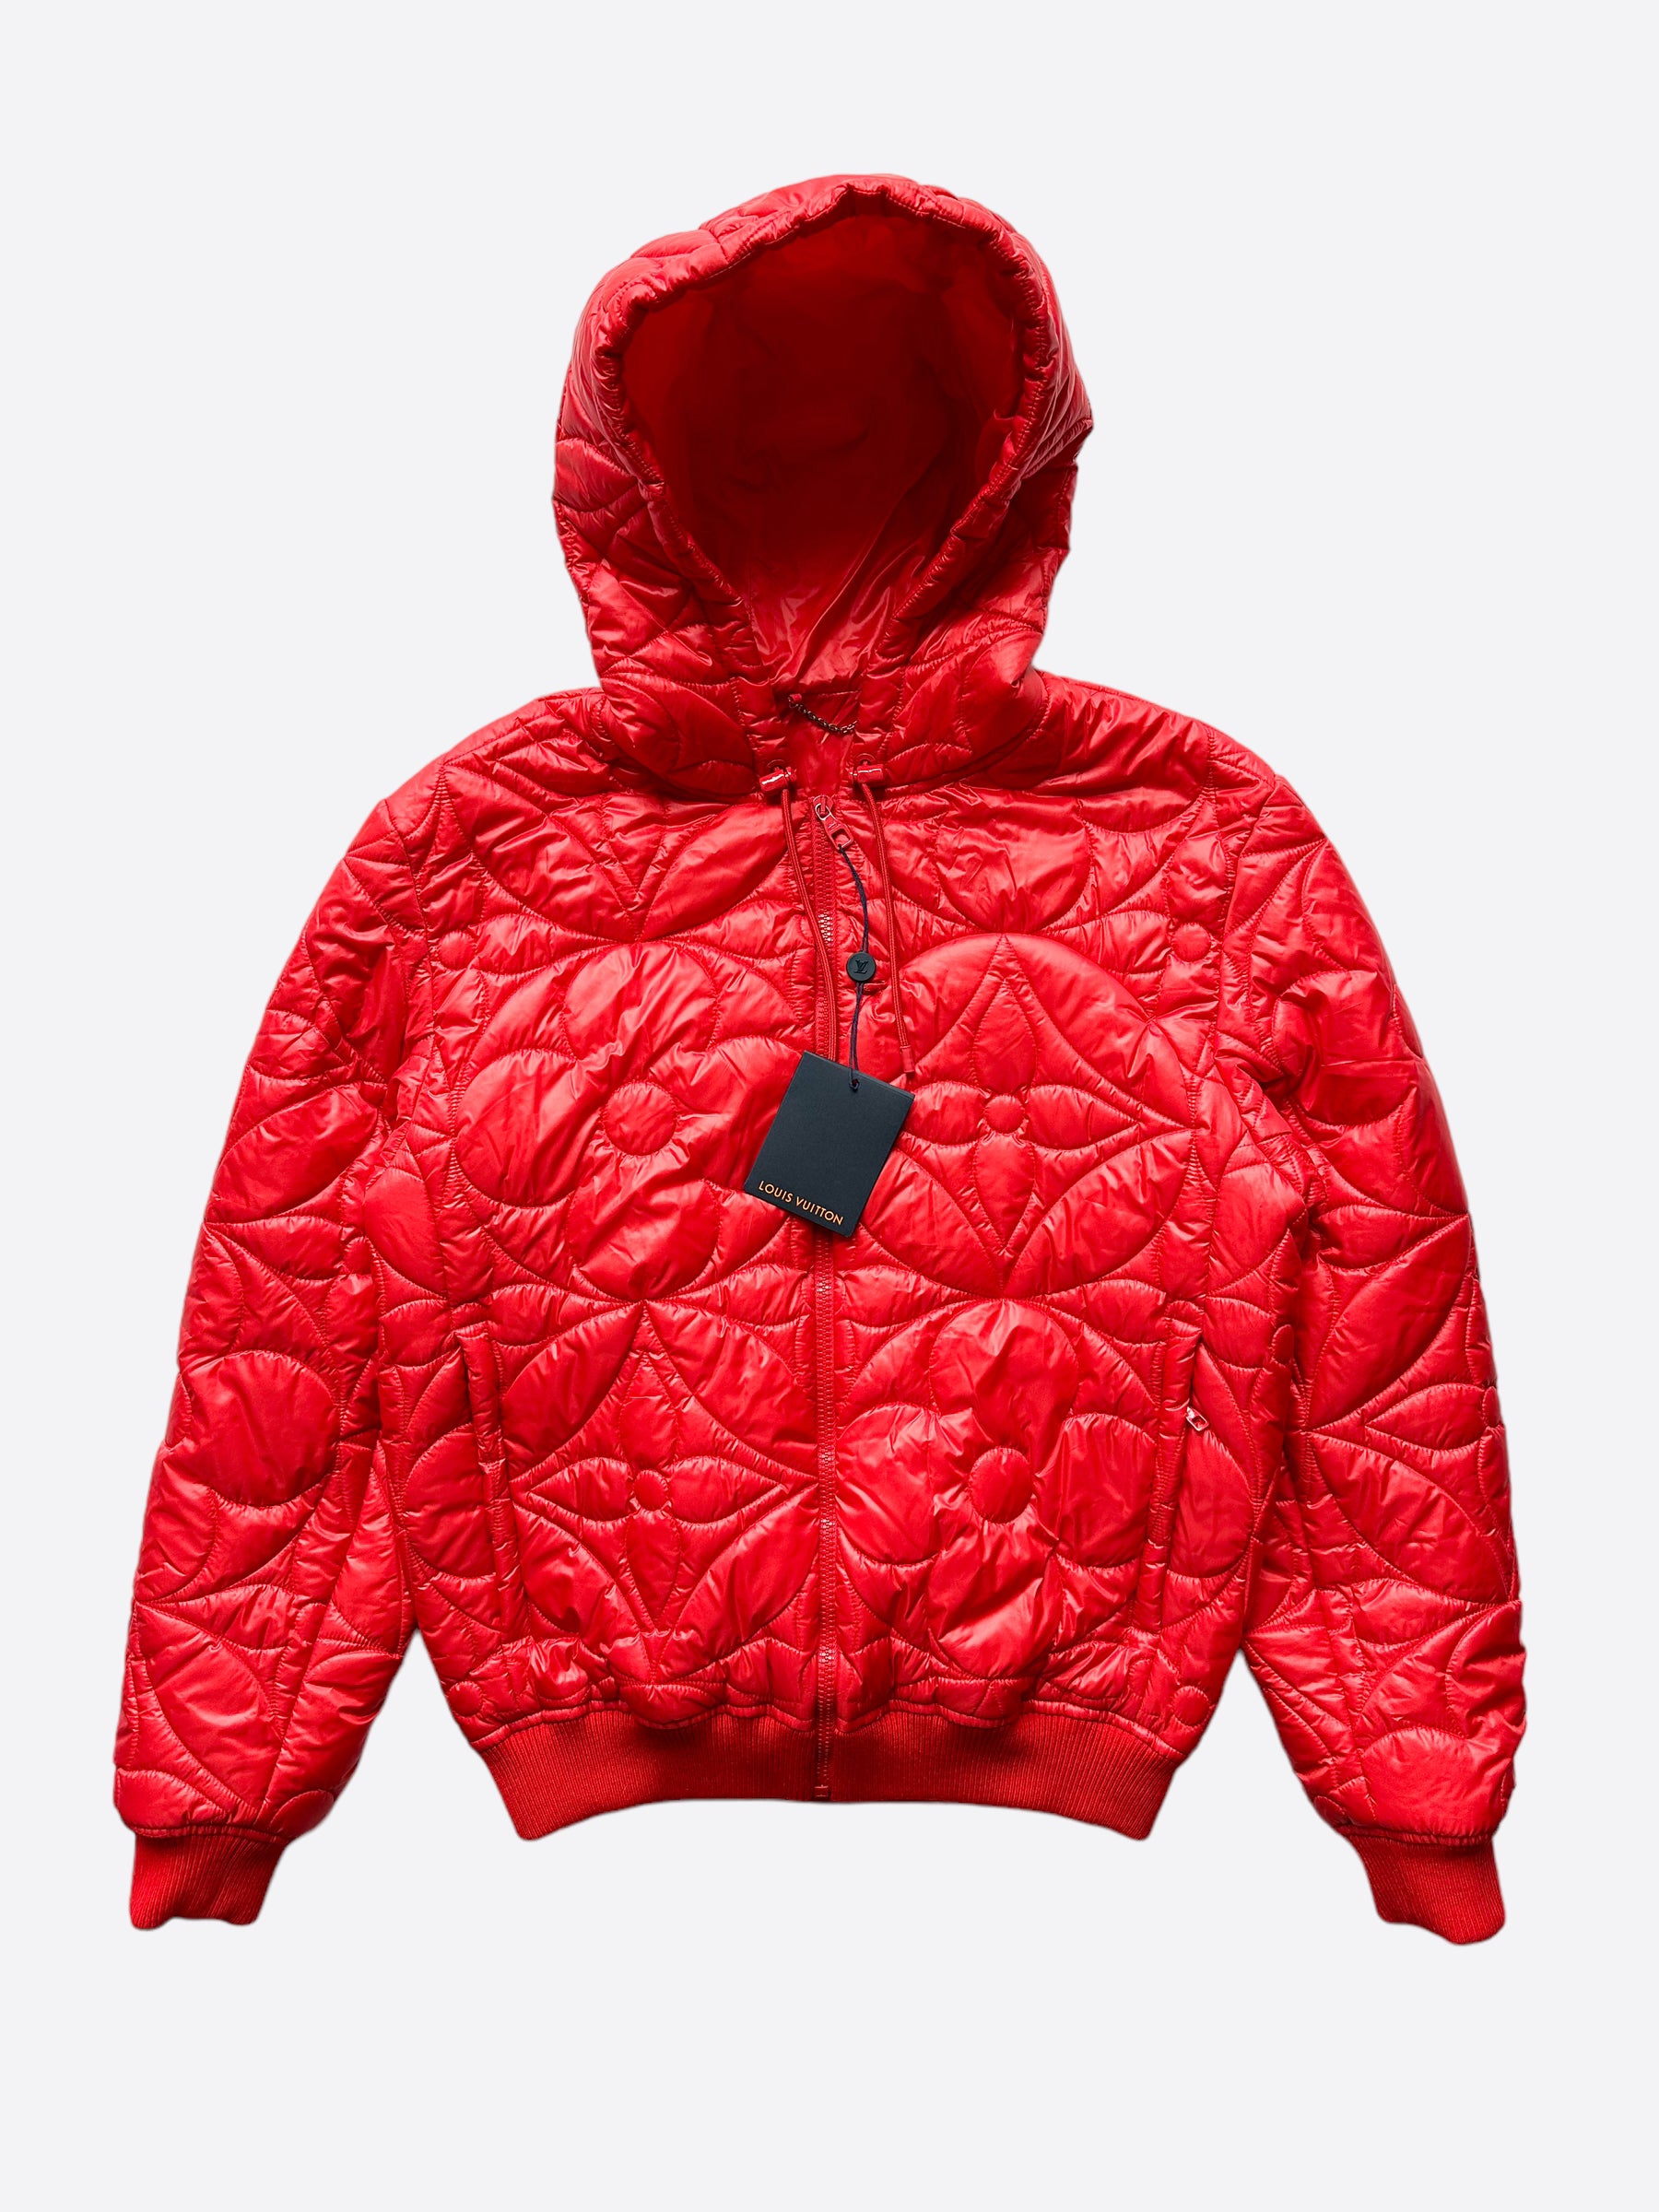 Louis Vuitton, Jackets & Coats, Mens Louis Vuitton Monogram Red Jacket Sz  5 Denim Unisex Zip Up